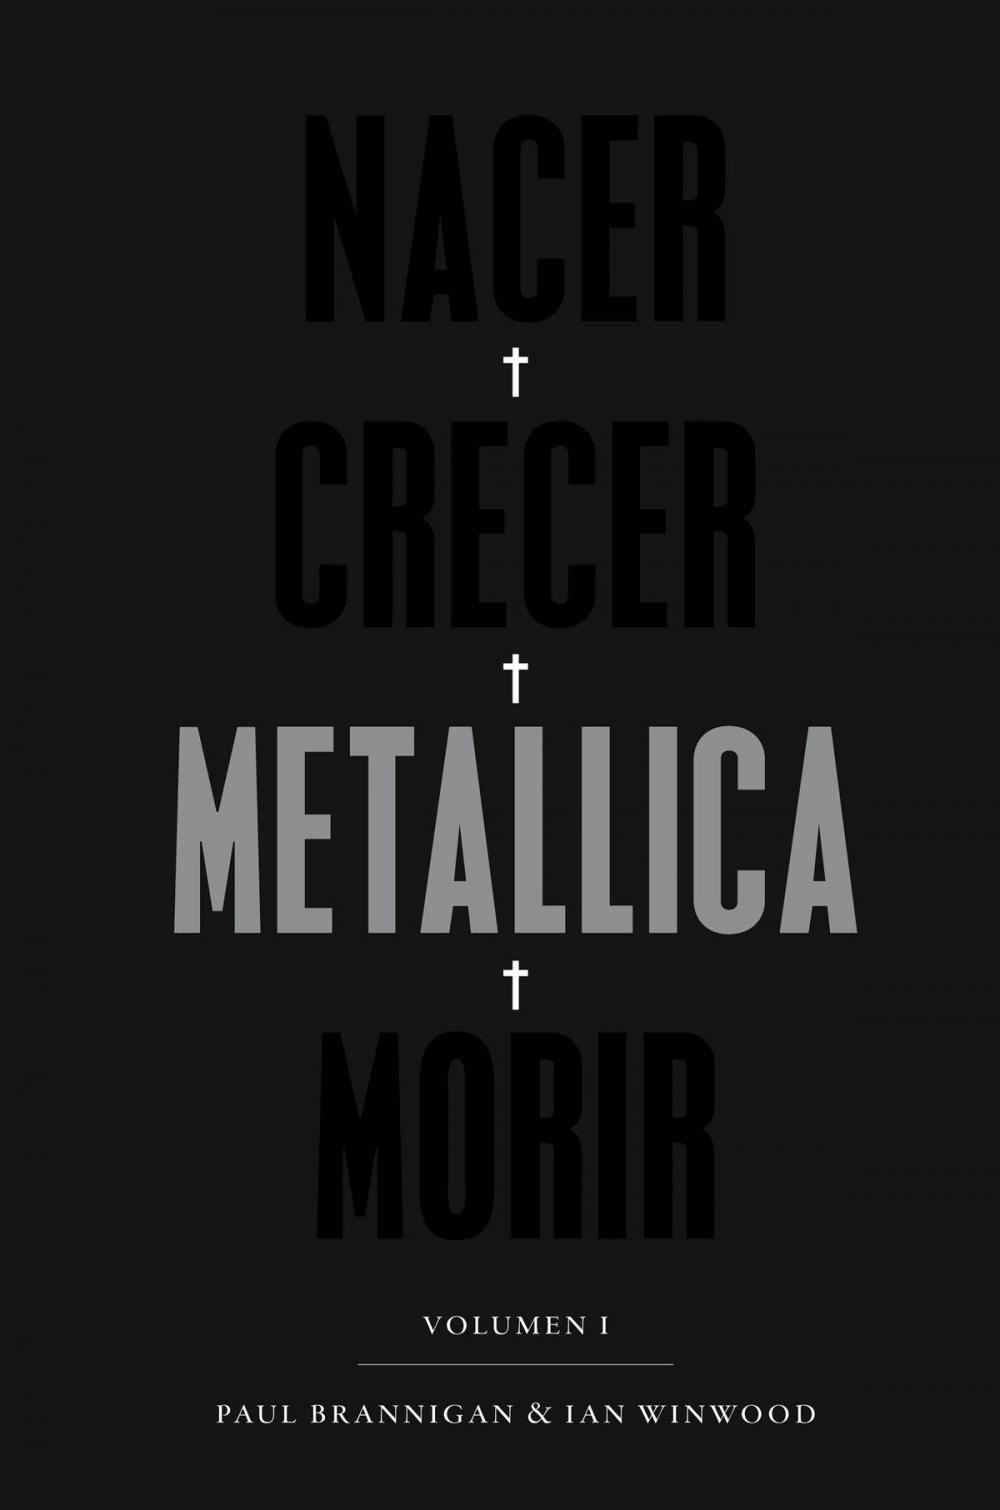 Big bigCover of Nacer. Crecer. Metallica. Morir